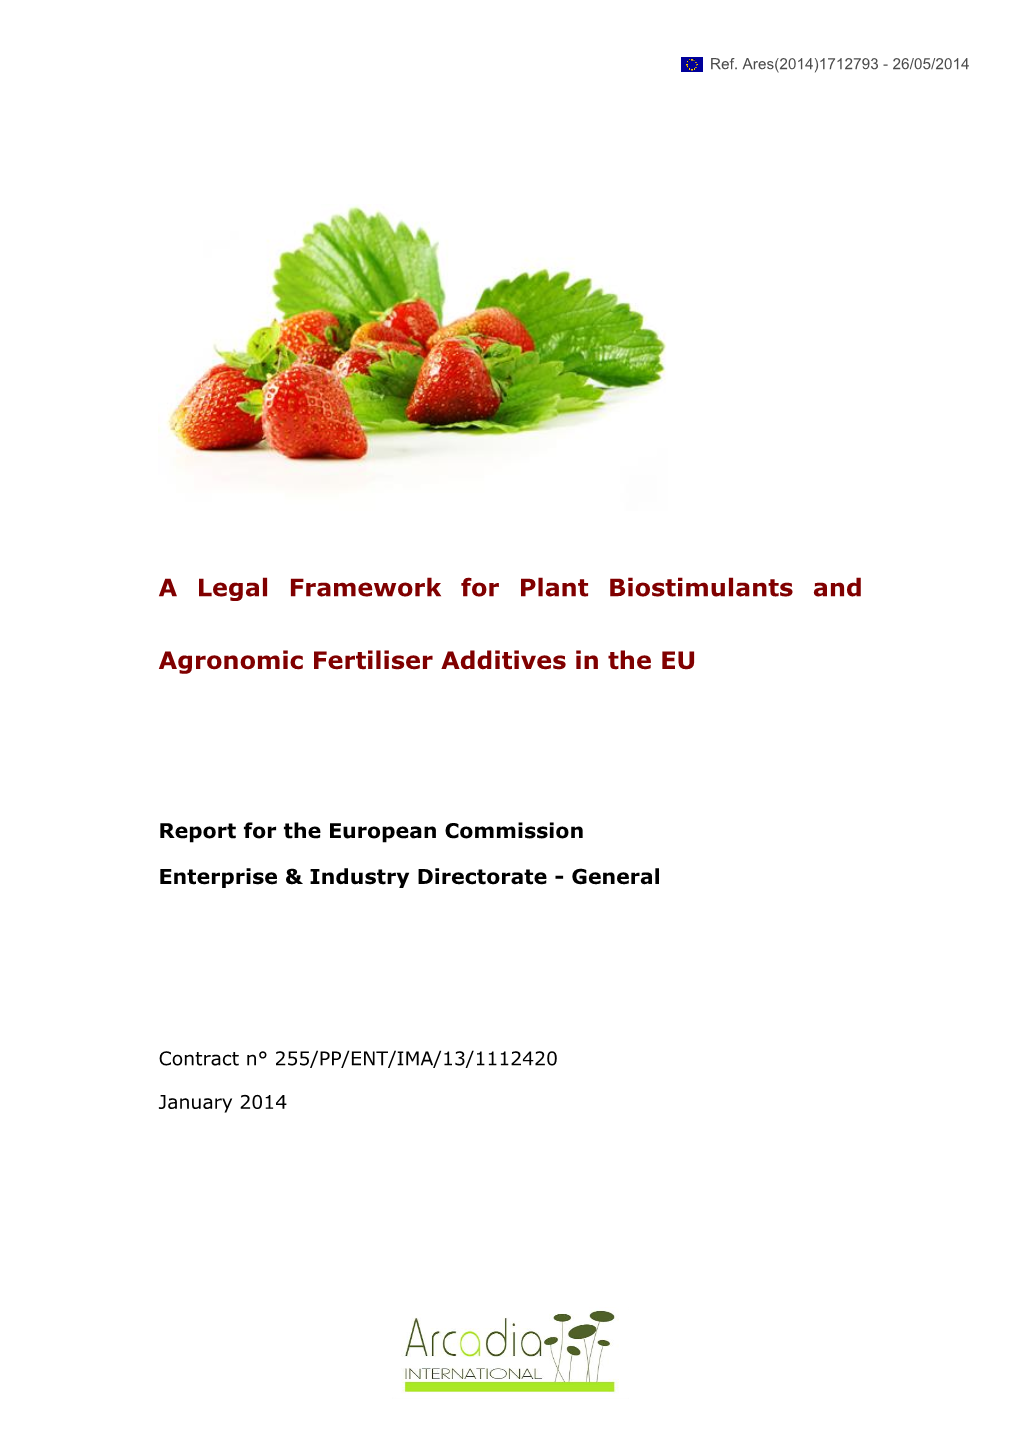 A Legal Framework for Plant Biostimulants and Agronomic Fertiliser Additives